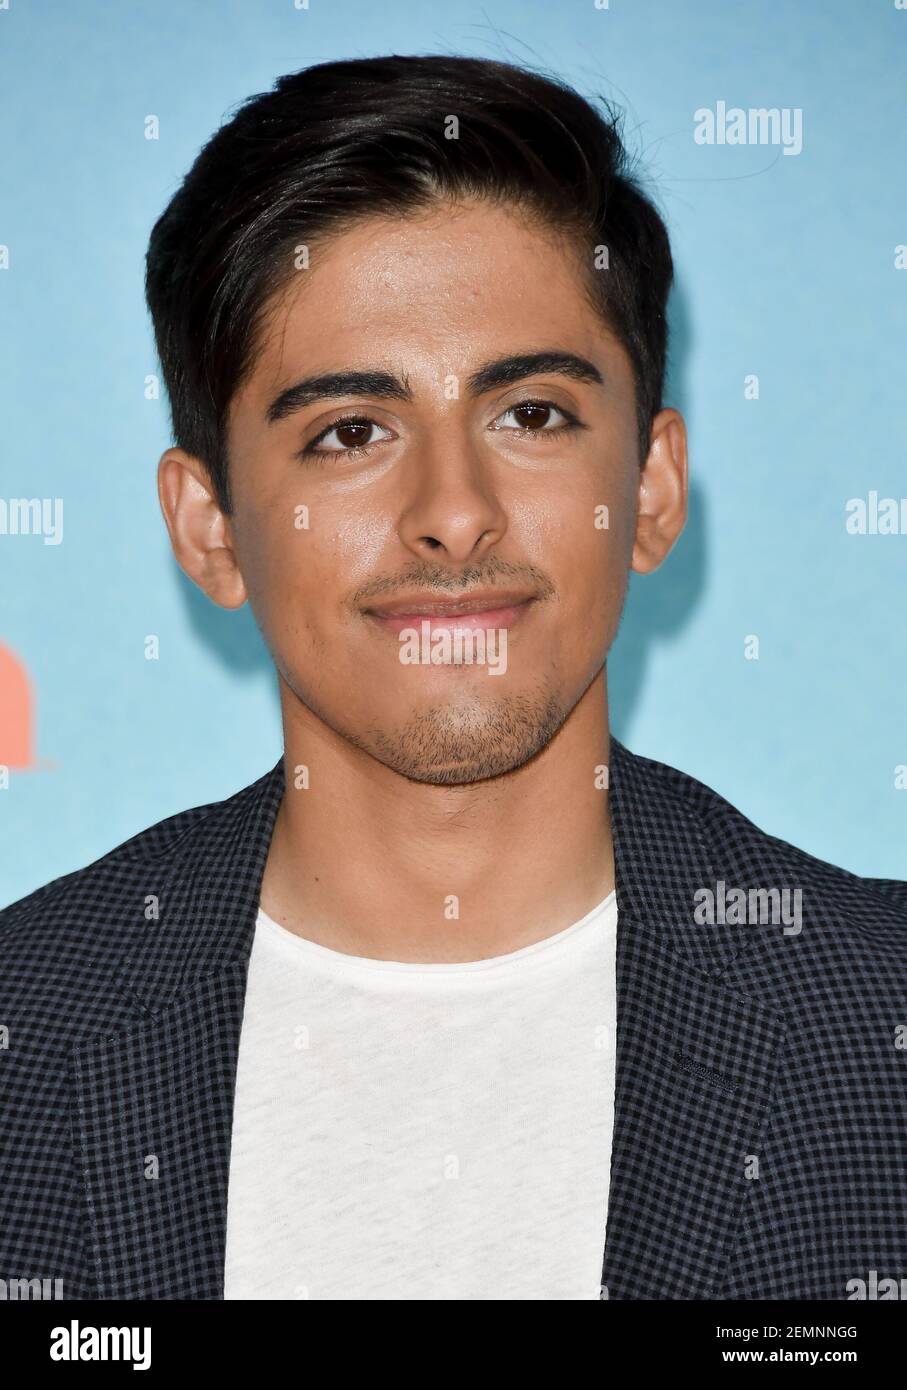 Karan Brar at Nickelodeon's 2019 Kids' Choice Awards held at Galen ...